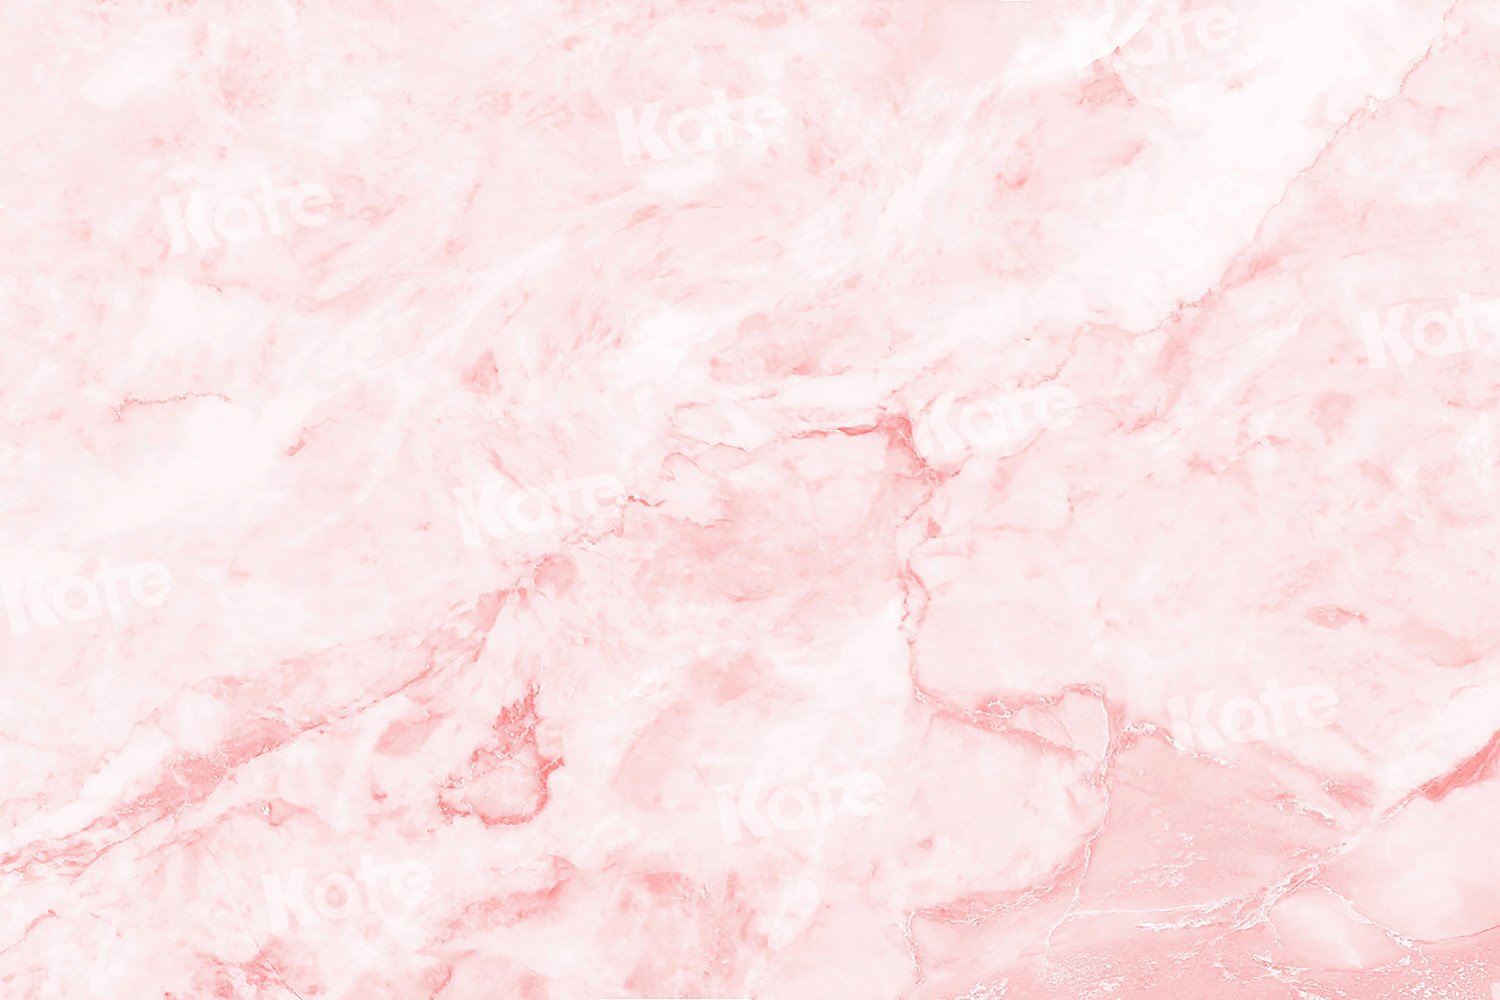 Kate Abstrakter rosa Traum Hintergrund